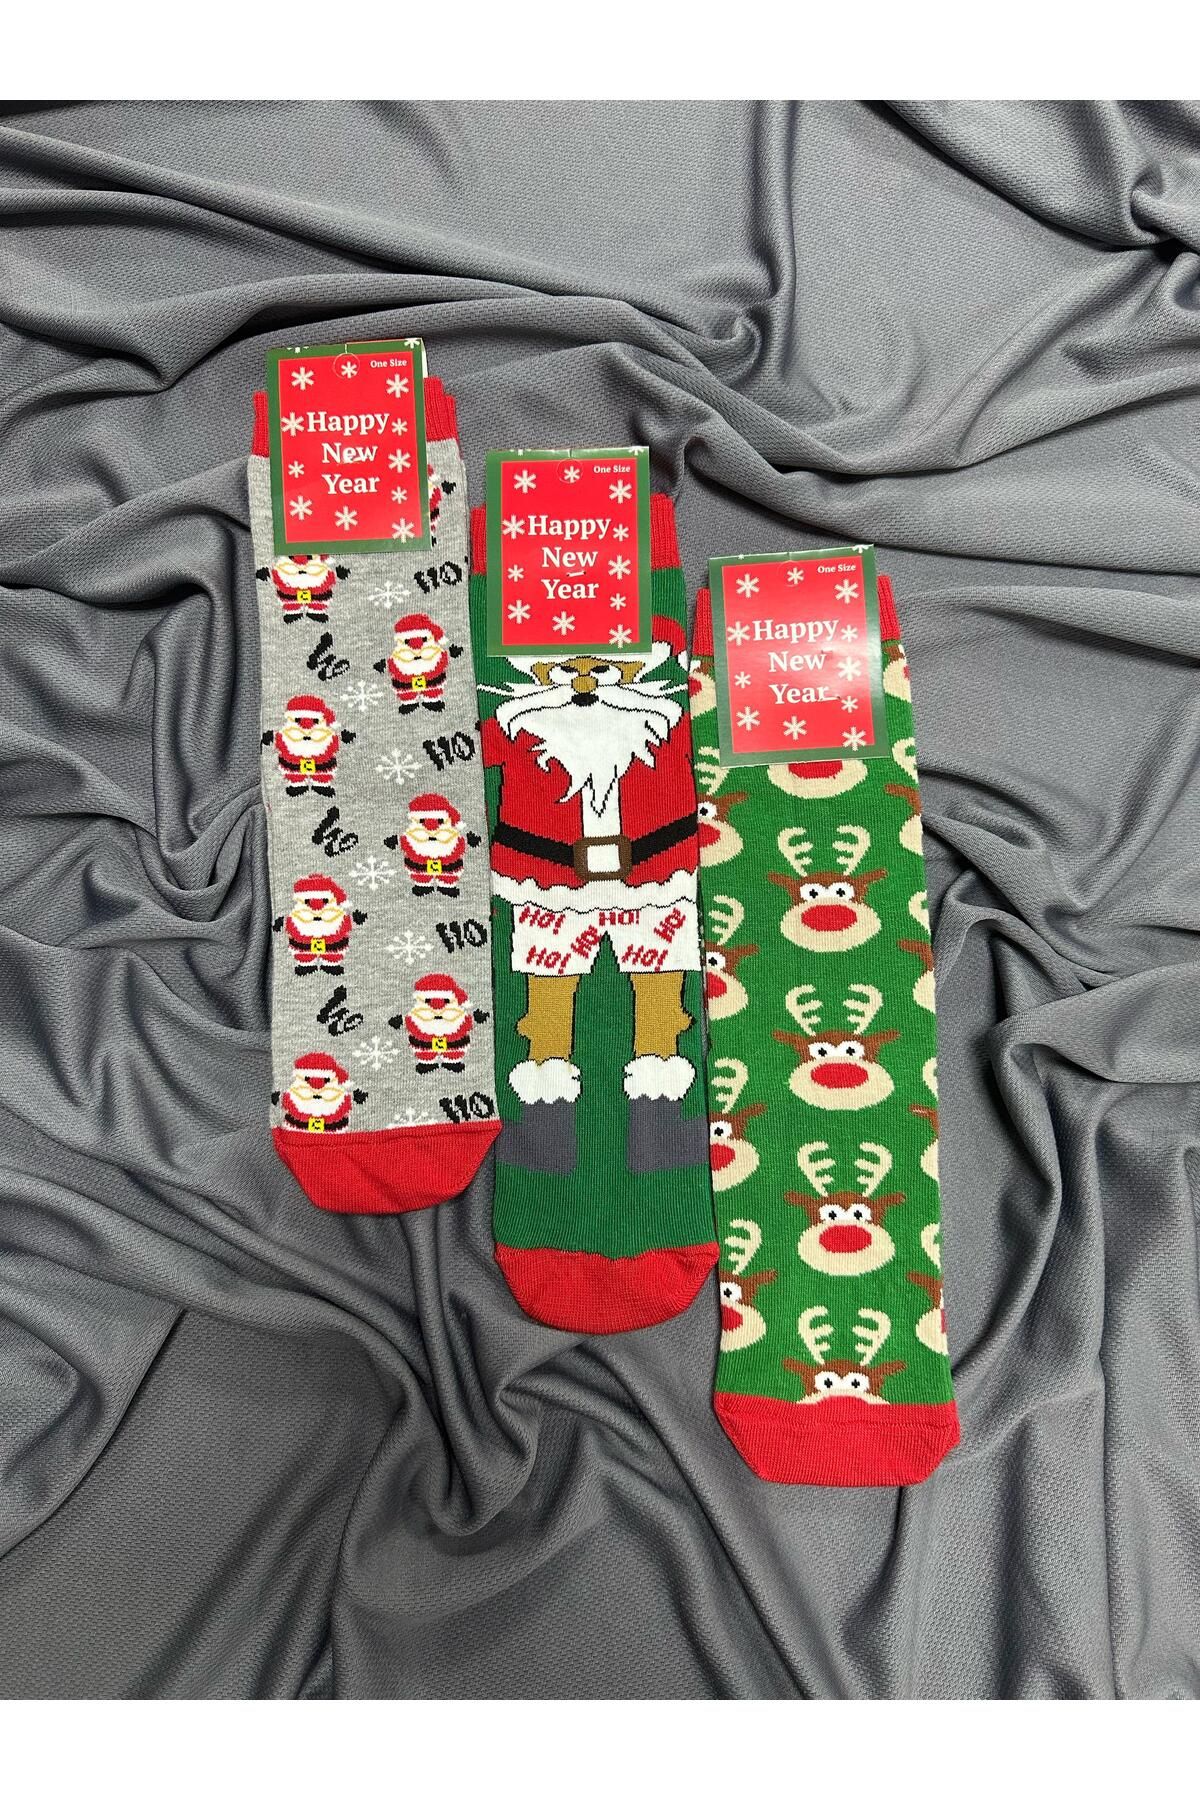 KRC & GLOBAL TEKSTİL Unisex Yılbaşı - Noel - Christmas Temalı Çoraplar 3'Lü